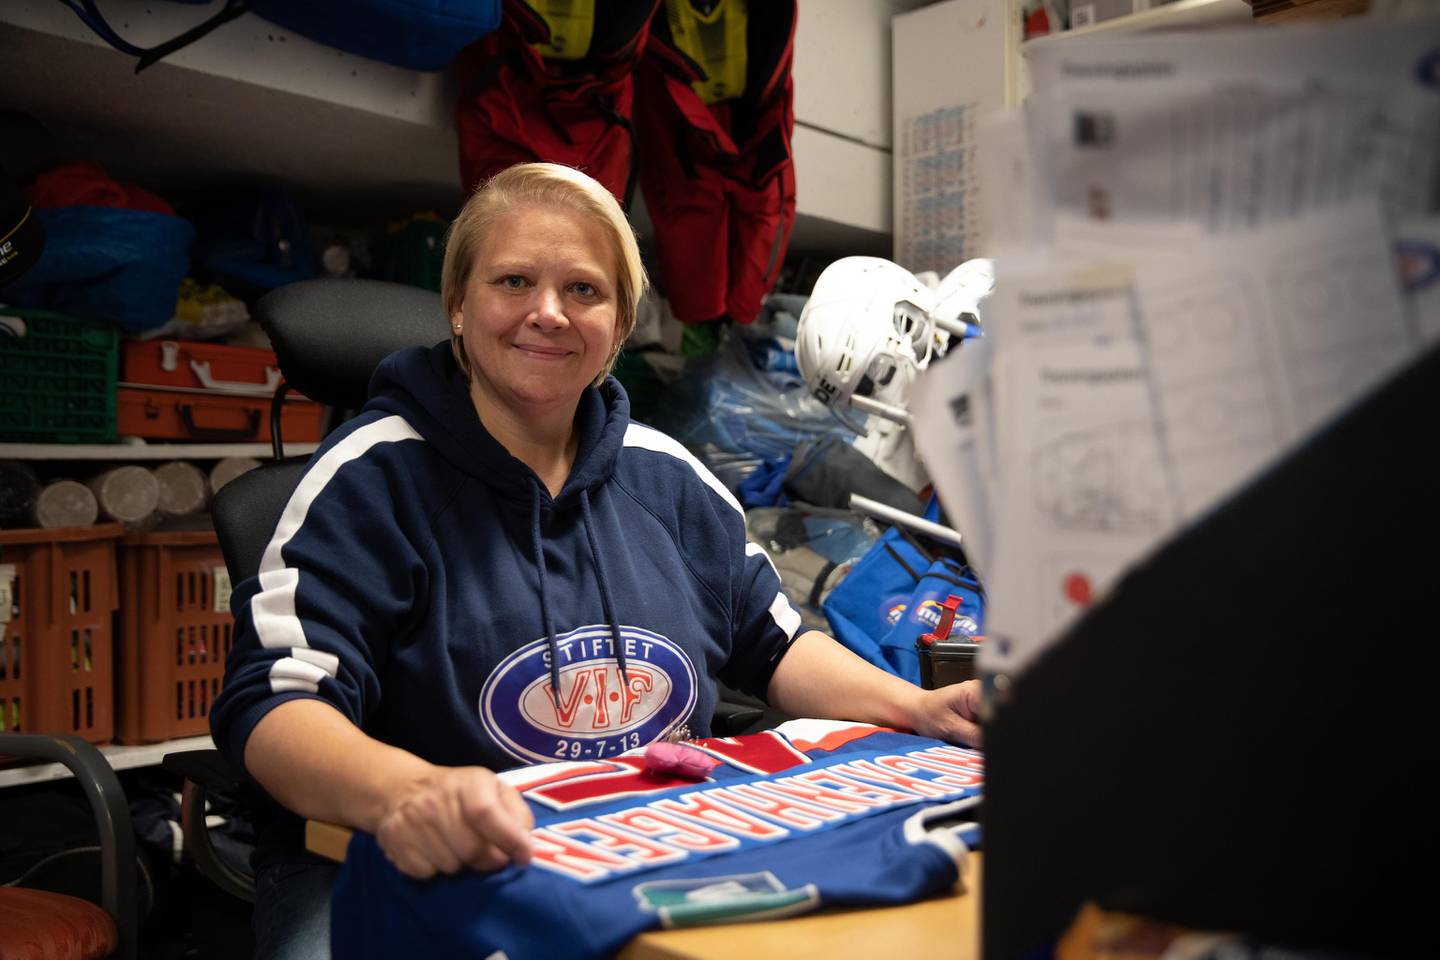 Ellen frivillighetsarbeider for VIF ishockey. Nominert til Tippenpris 2020. Jordal ishall. 2020.

Her jobber hun med å merke klær med navn til de nye spillerne på laget.